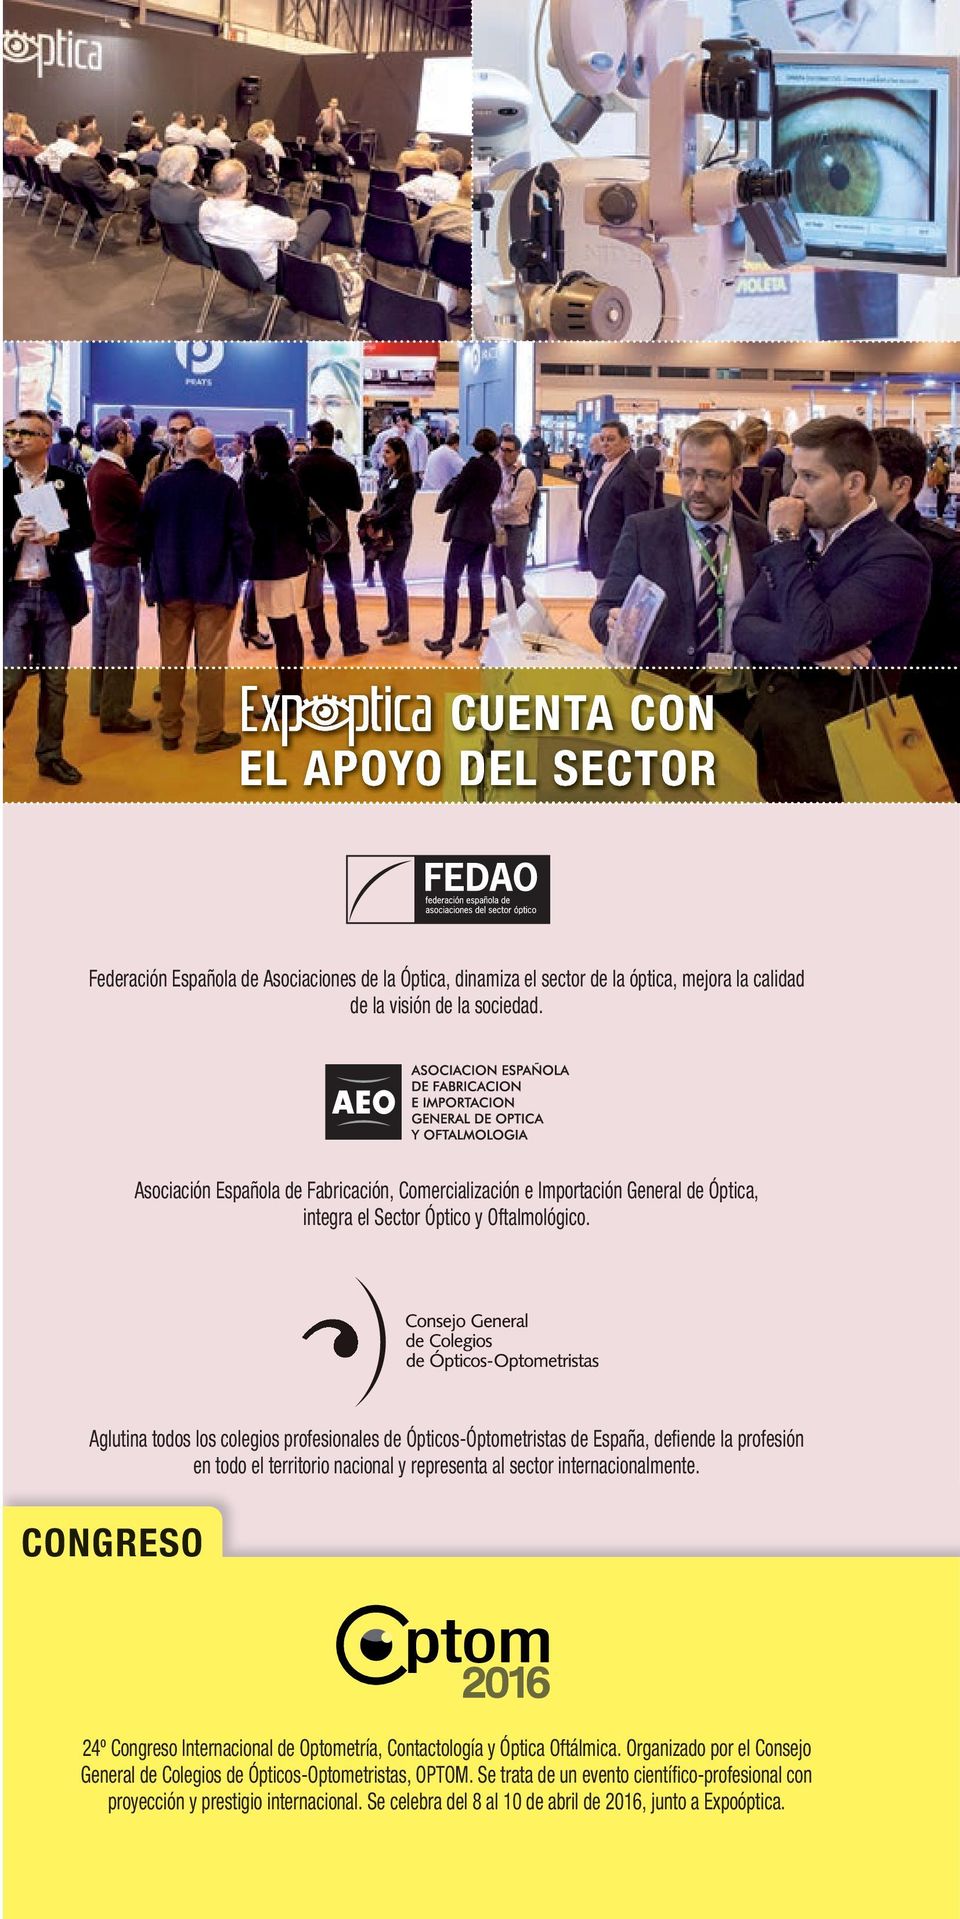 Aglutina todos los colegios profesionales de Ópticos-Óptometristas de España, defiende la profesión en todo el territorio nacional y representa al sector internacionalmente.